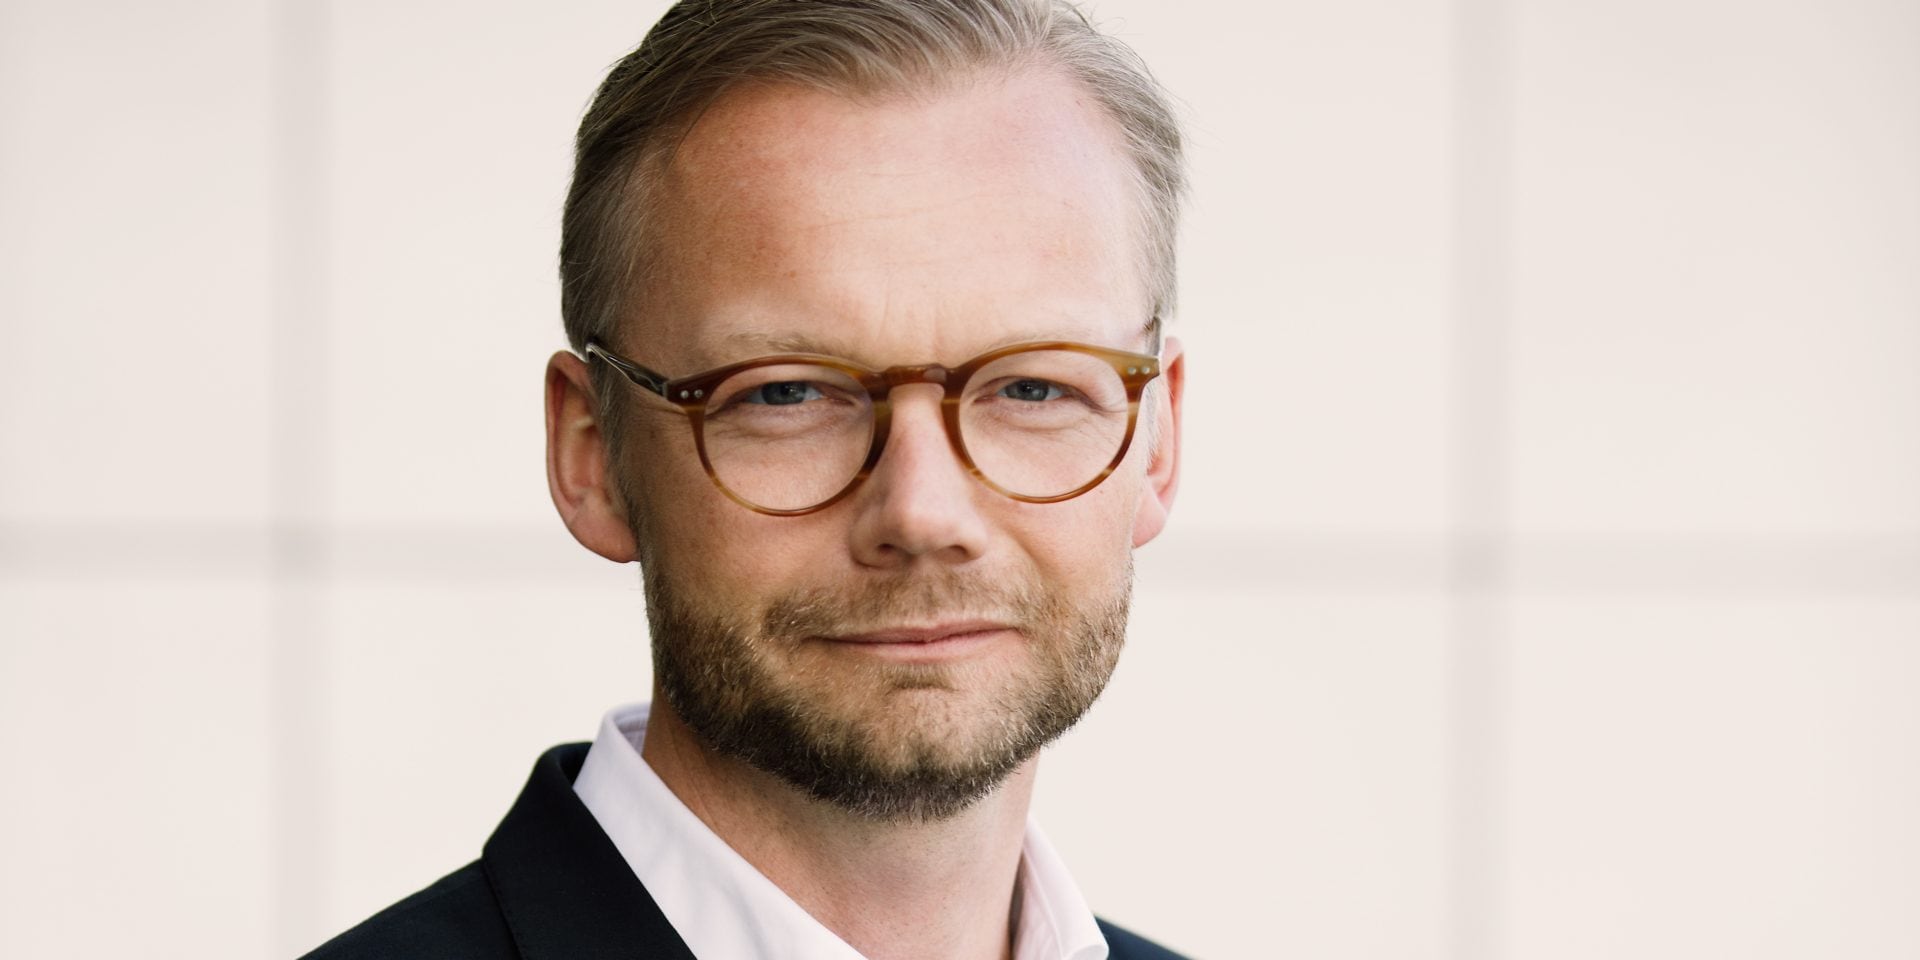 Soeren Brogaard, CEO of Trackunit